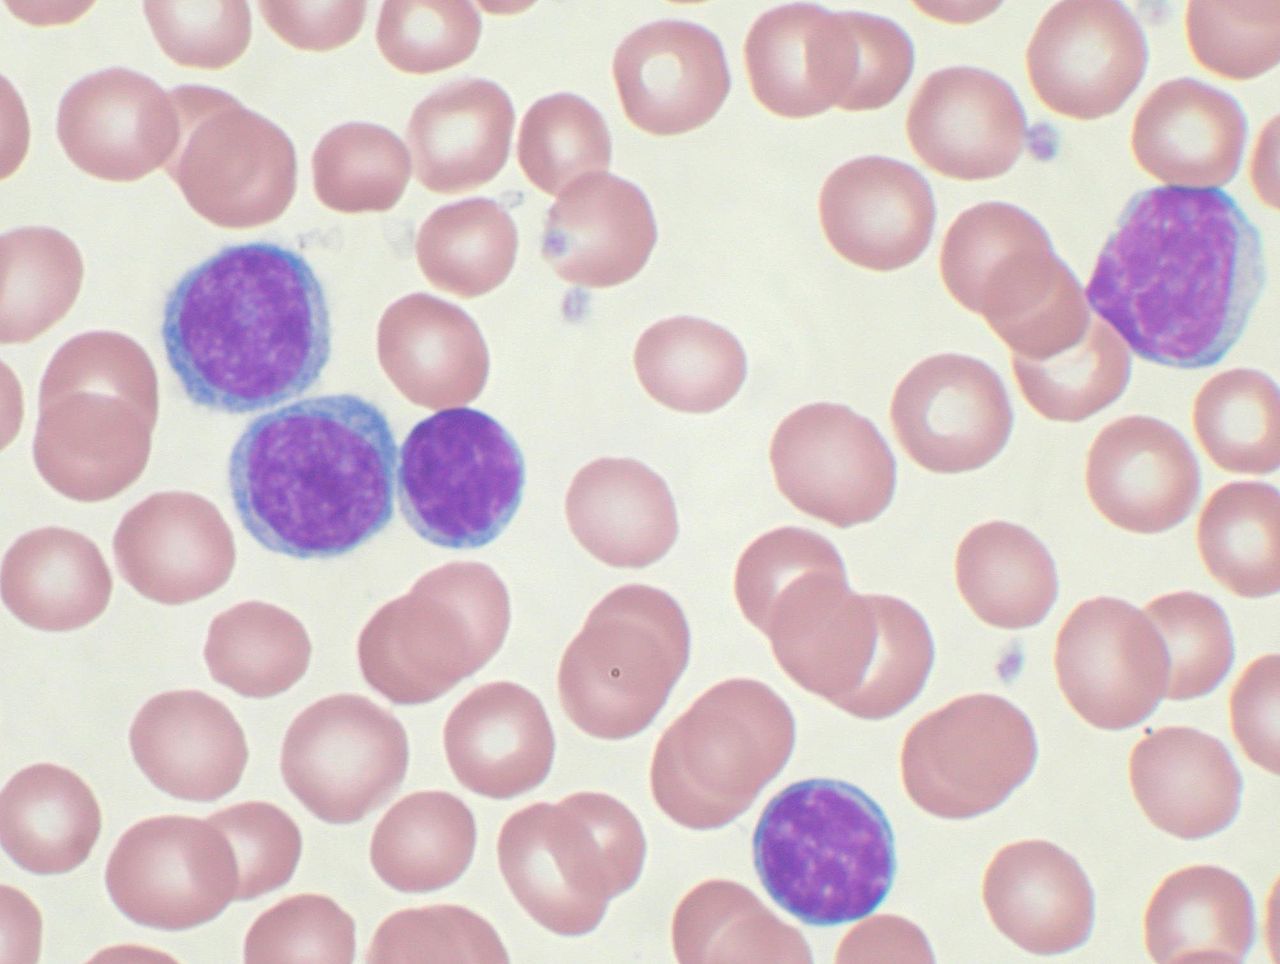 1280px-Chronic_lymphocytic_leukemia